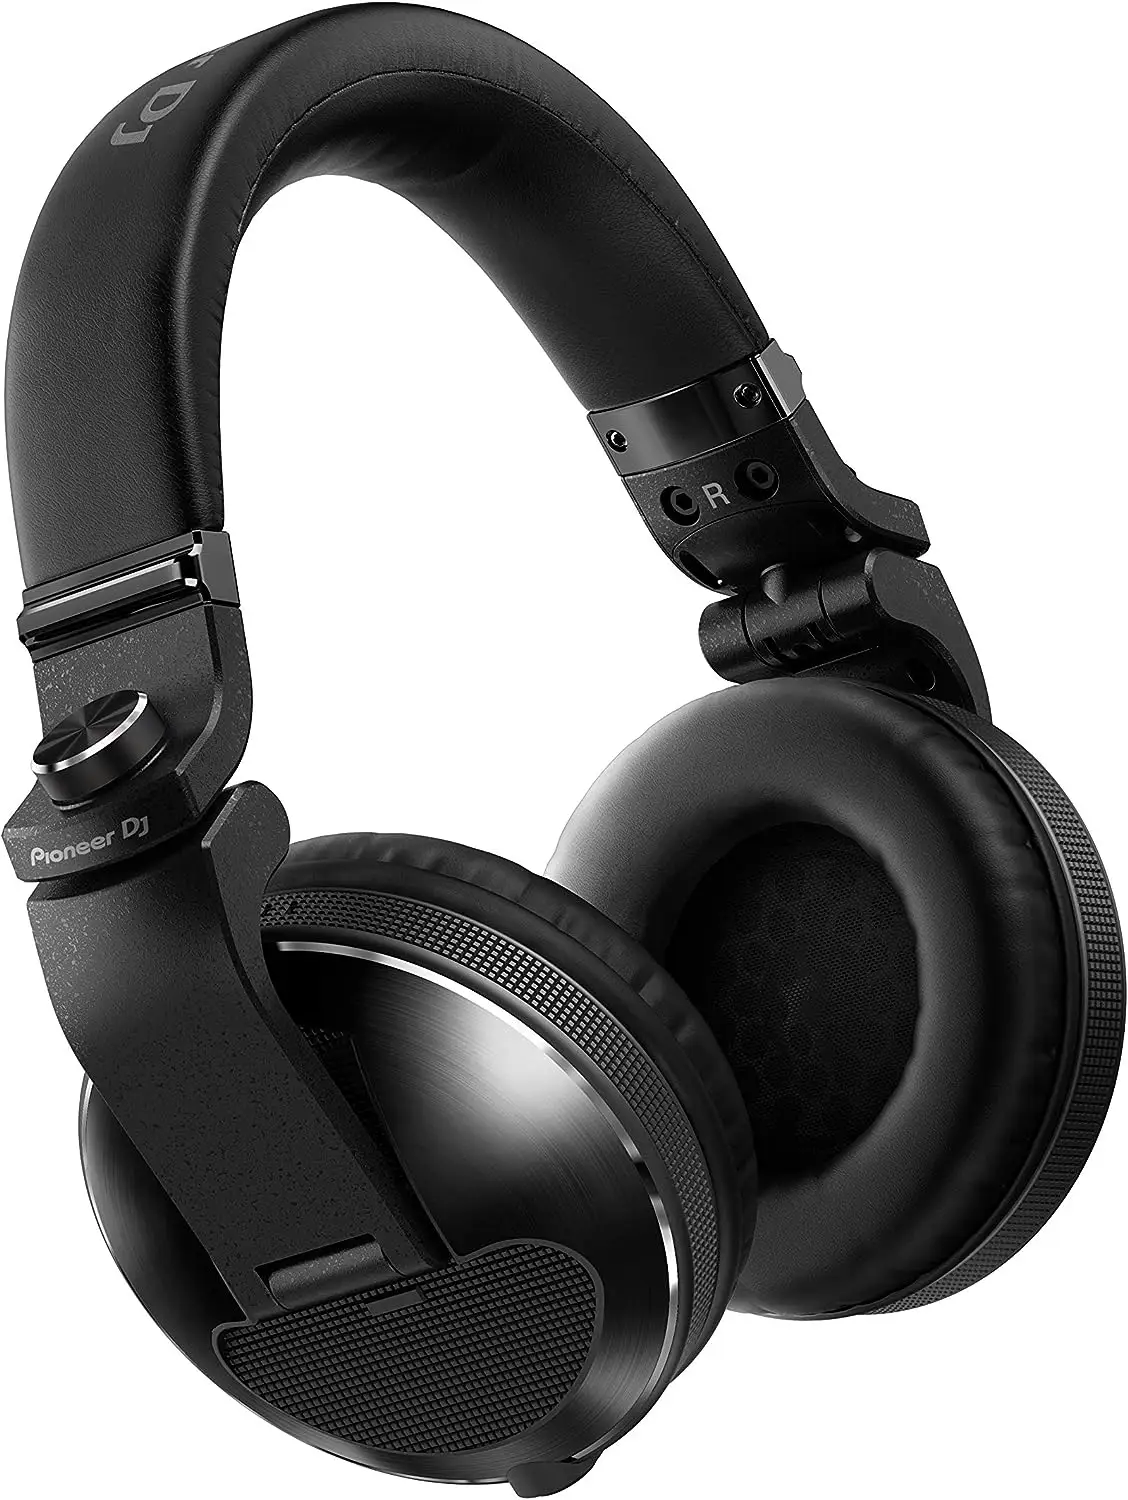 https://www.amazon.com/Pioneer-DJ-HDJ-X10-K-Professional-Headphone/dp/B075BCB9Q1/ref=sr_1_2?crid=2W7EM04NR6UGB&keywords=pioneer+dj+headphones+hdj-x10&qid=1690900689&sprefix=Pioneer+DJ+HDJ+X10%2Caps%2C310&sr=8-2